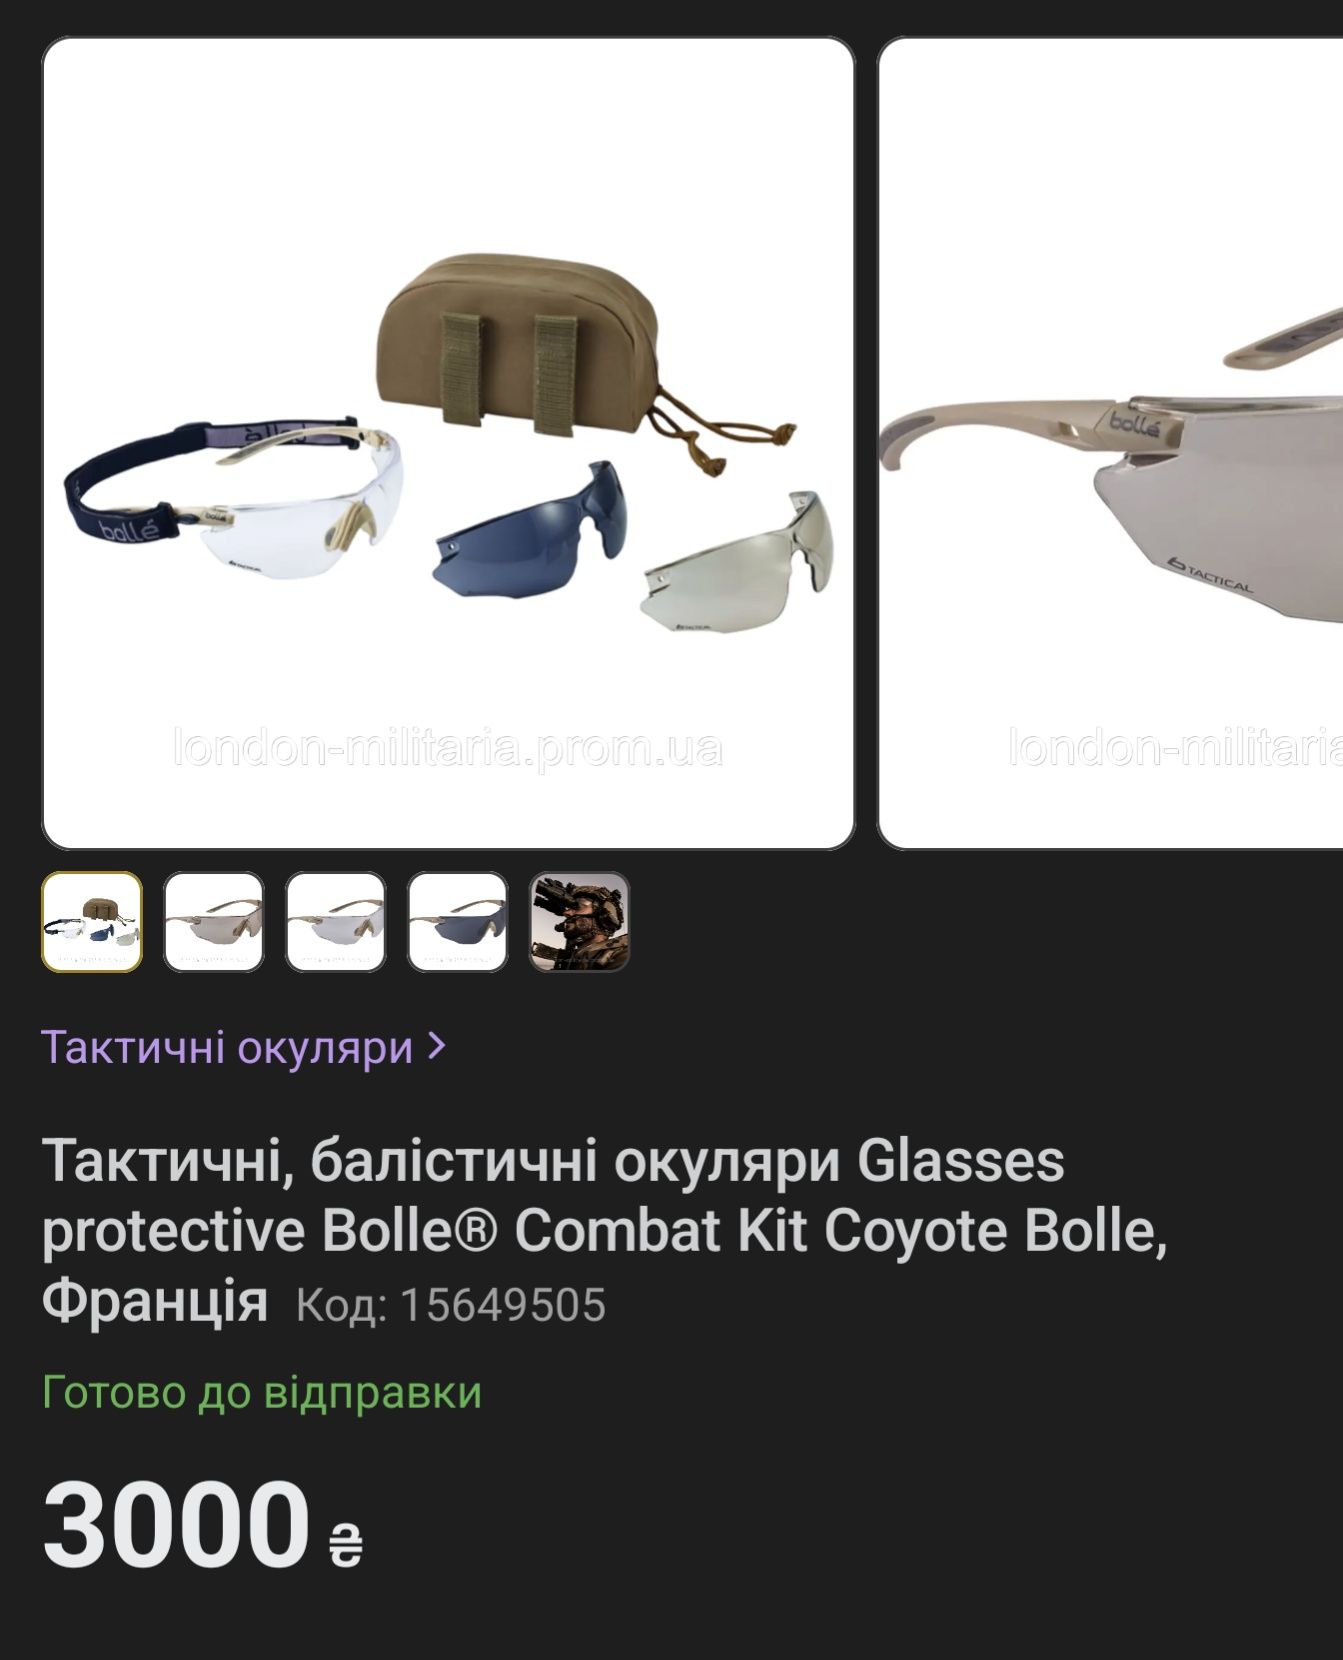 Тактичні, балістичні окуляри Glasses protective Bolle Combat Kit Coyo